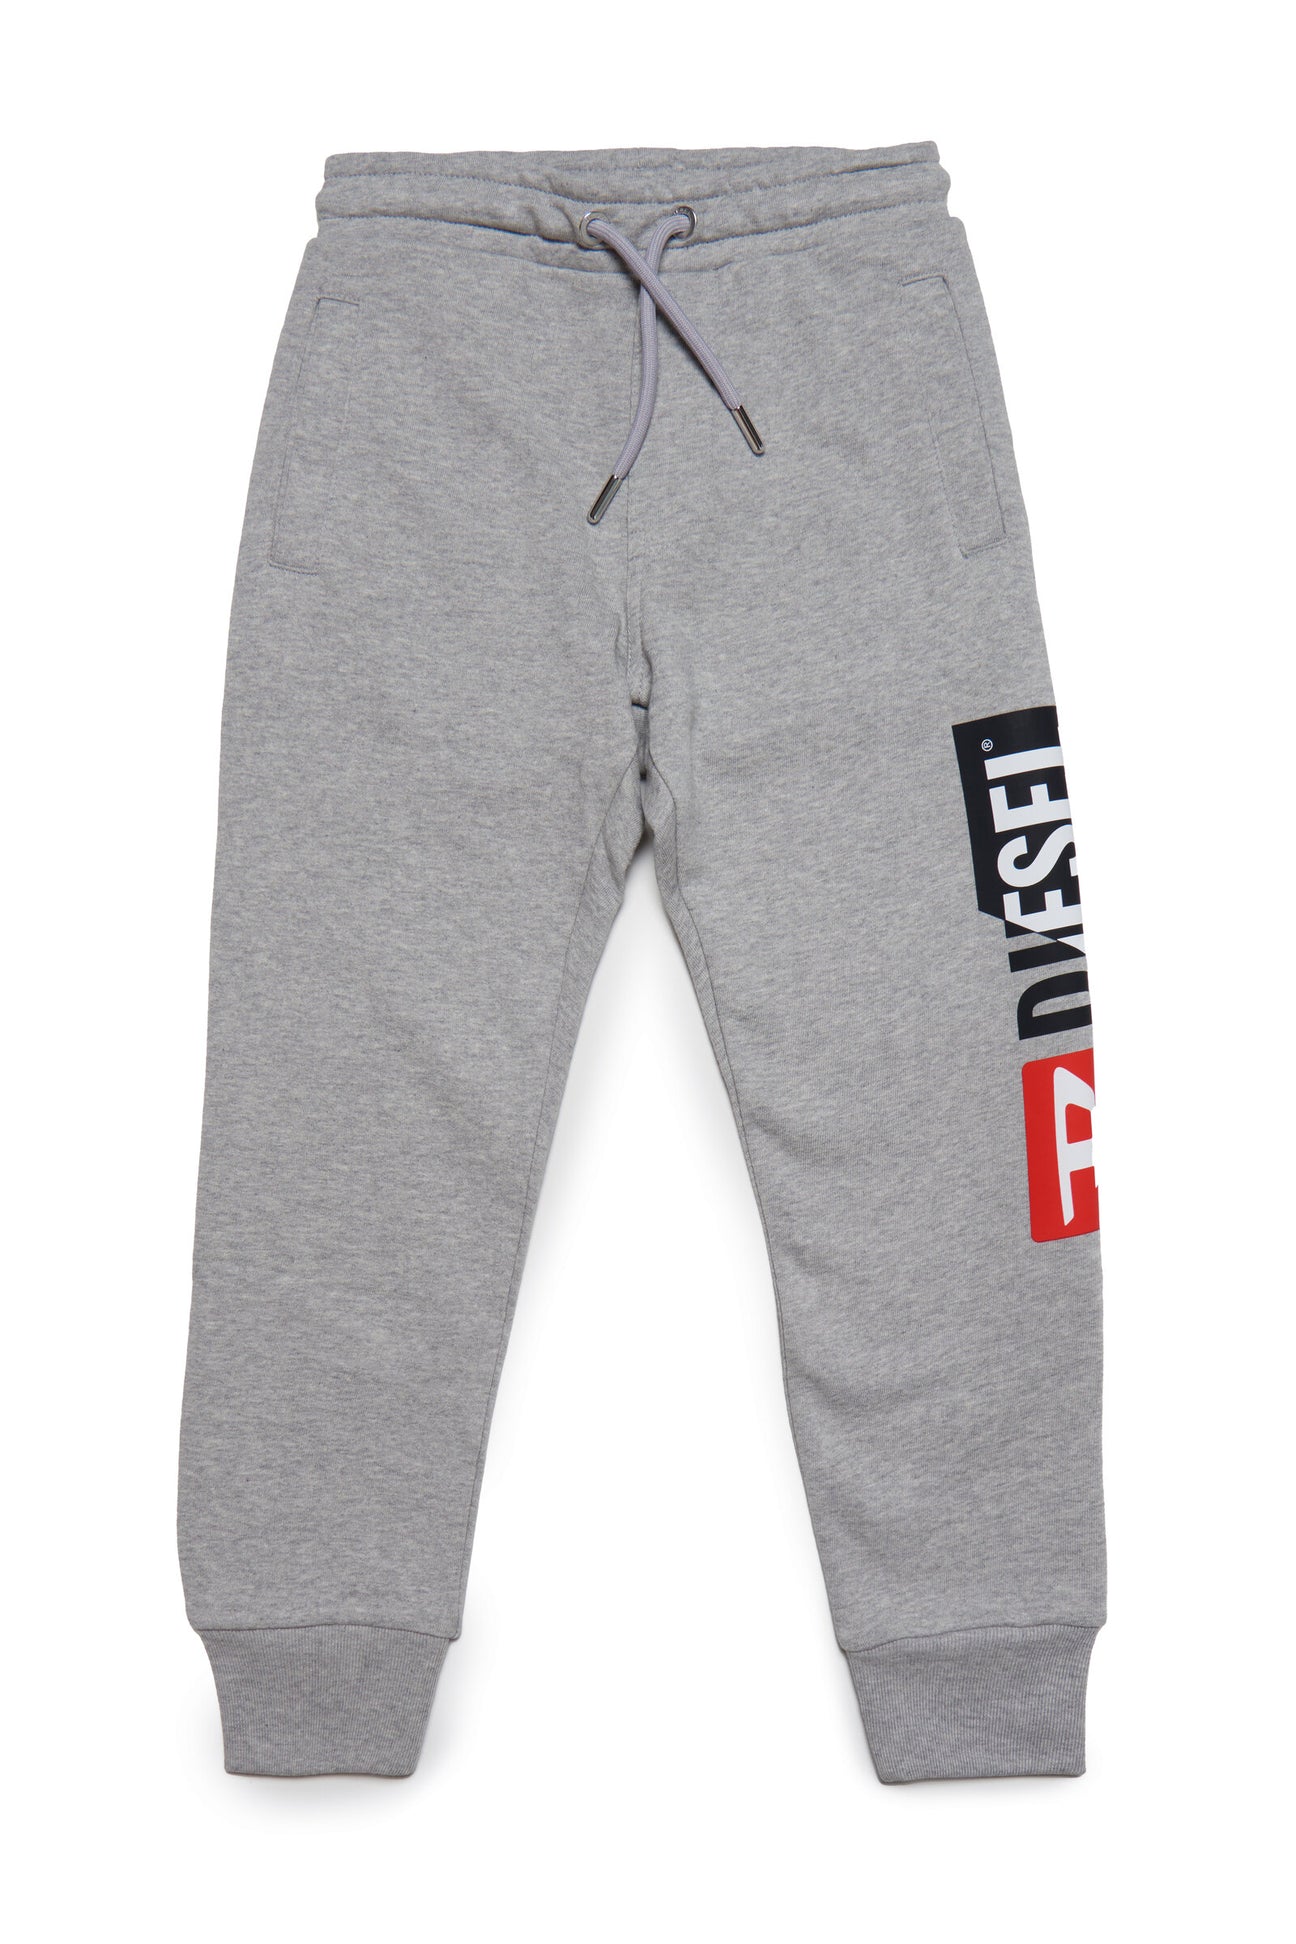 Pantalón jogger gris con logo Diesel double 